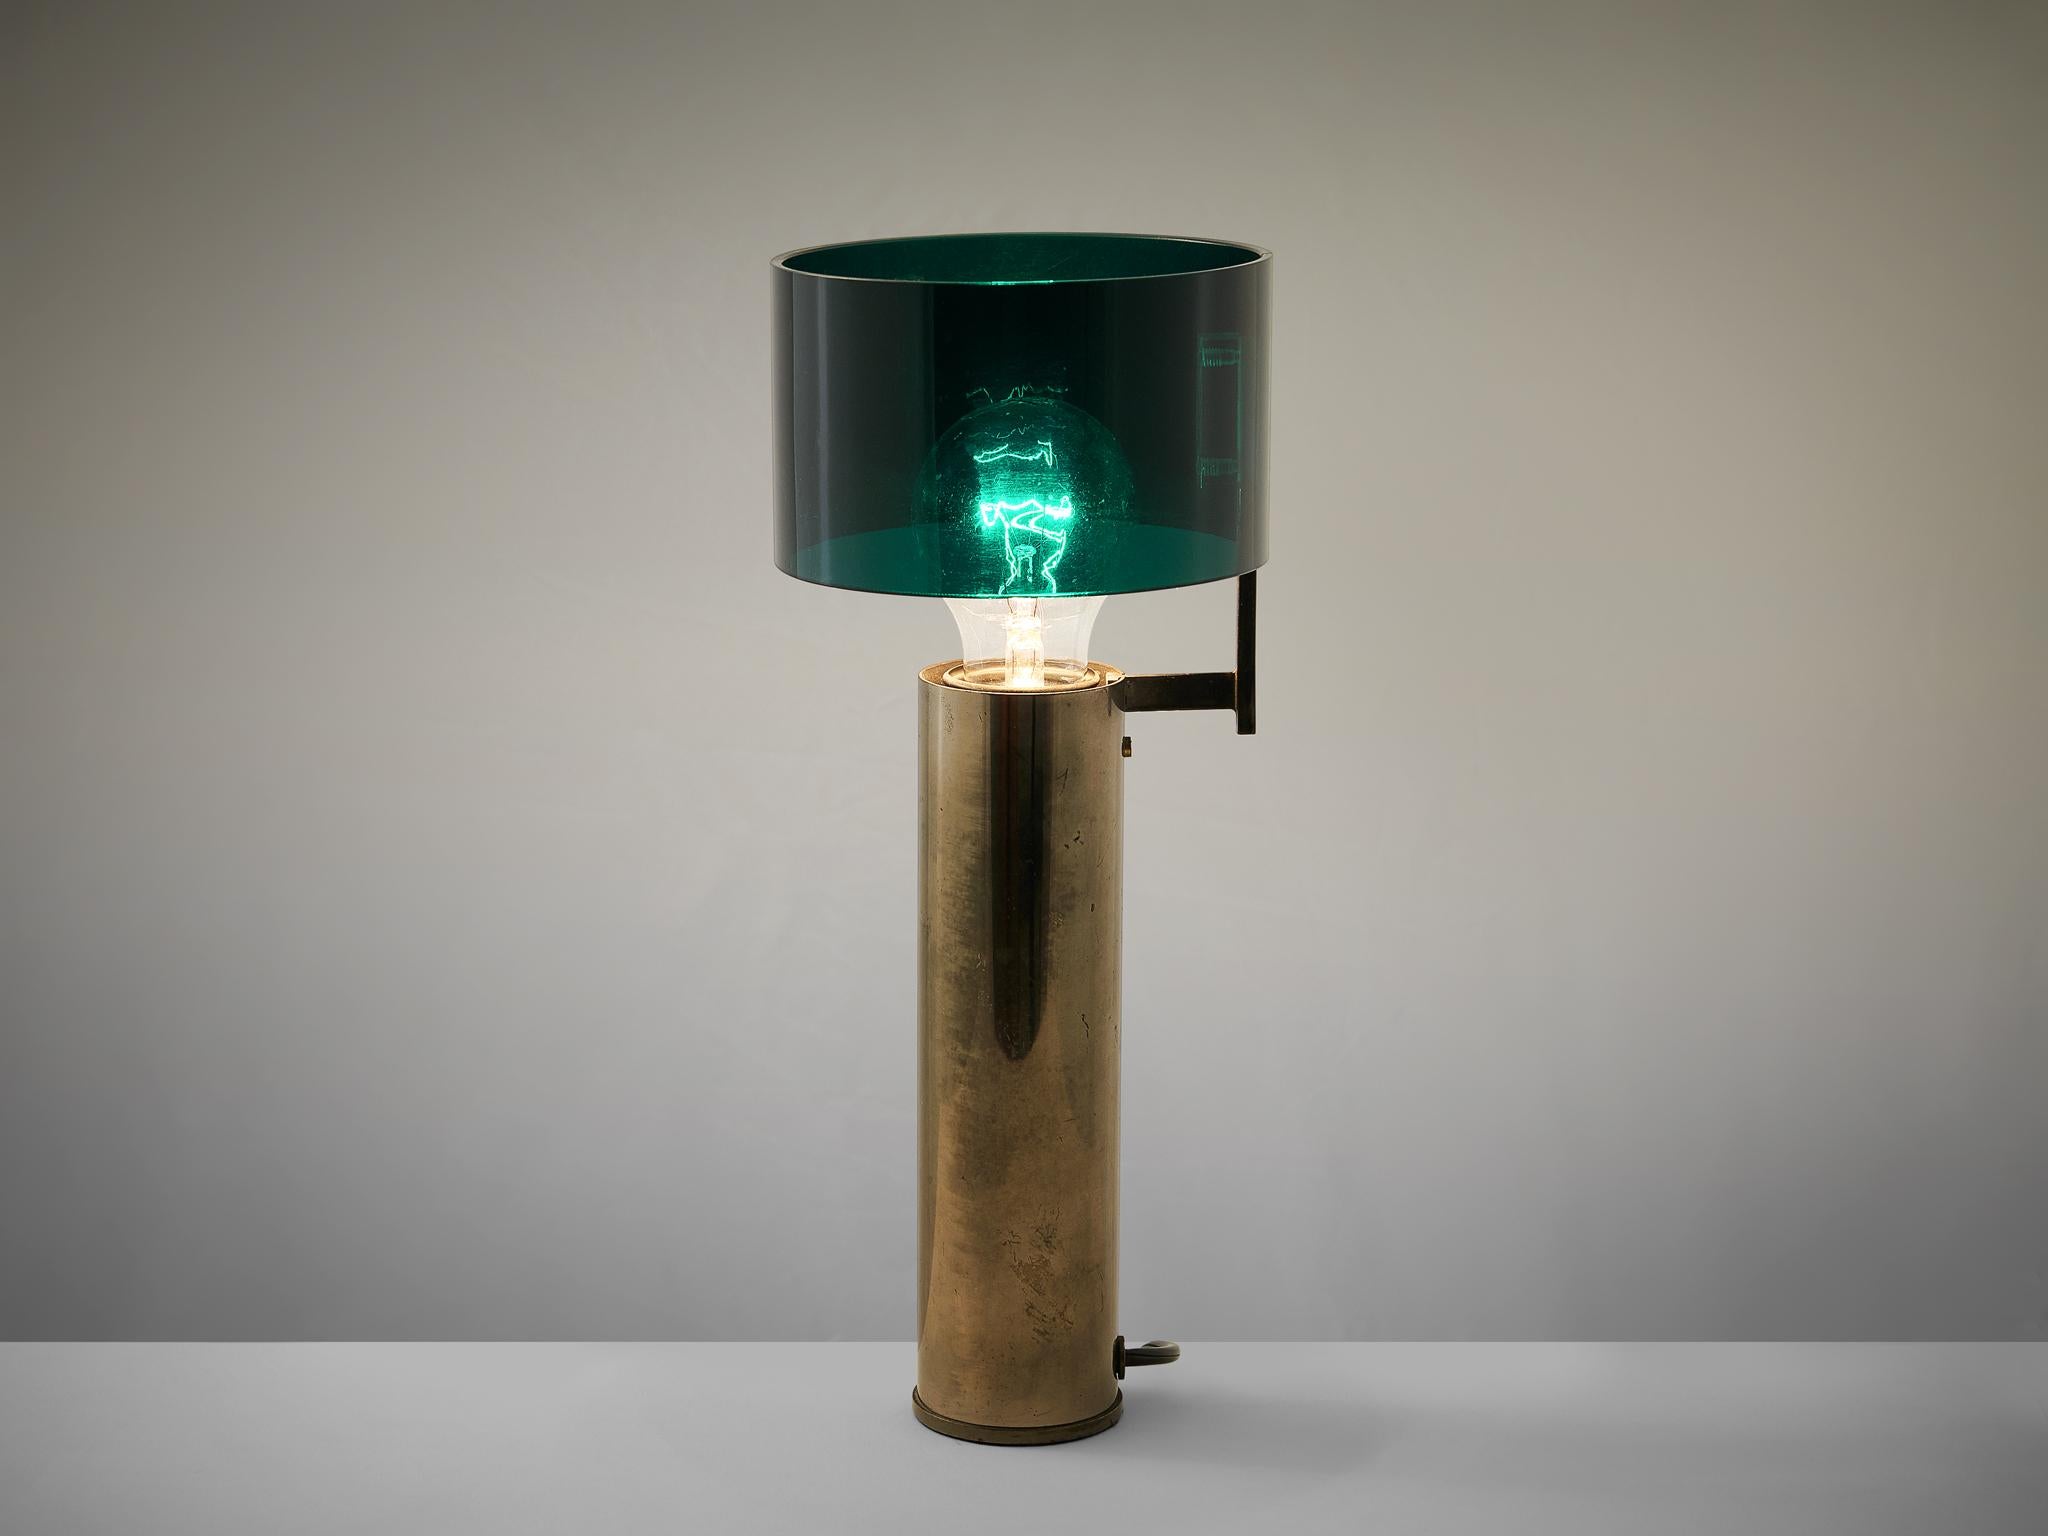 Tito Agnoli pour O-Luce, lampe de table, modèle '269', laiton nickelé, plexiglas, Italie, 1959. 

Le designer italien Tito Agnoli a conçu cette lampe de table, modèle 269, en 1959 pour O-Luce. Cette lampe de table est dotée d'une base cylindrique en